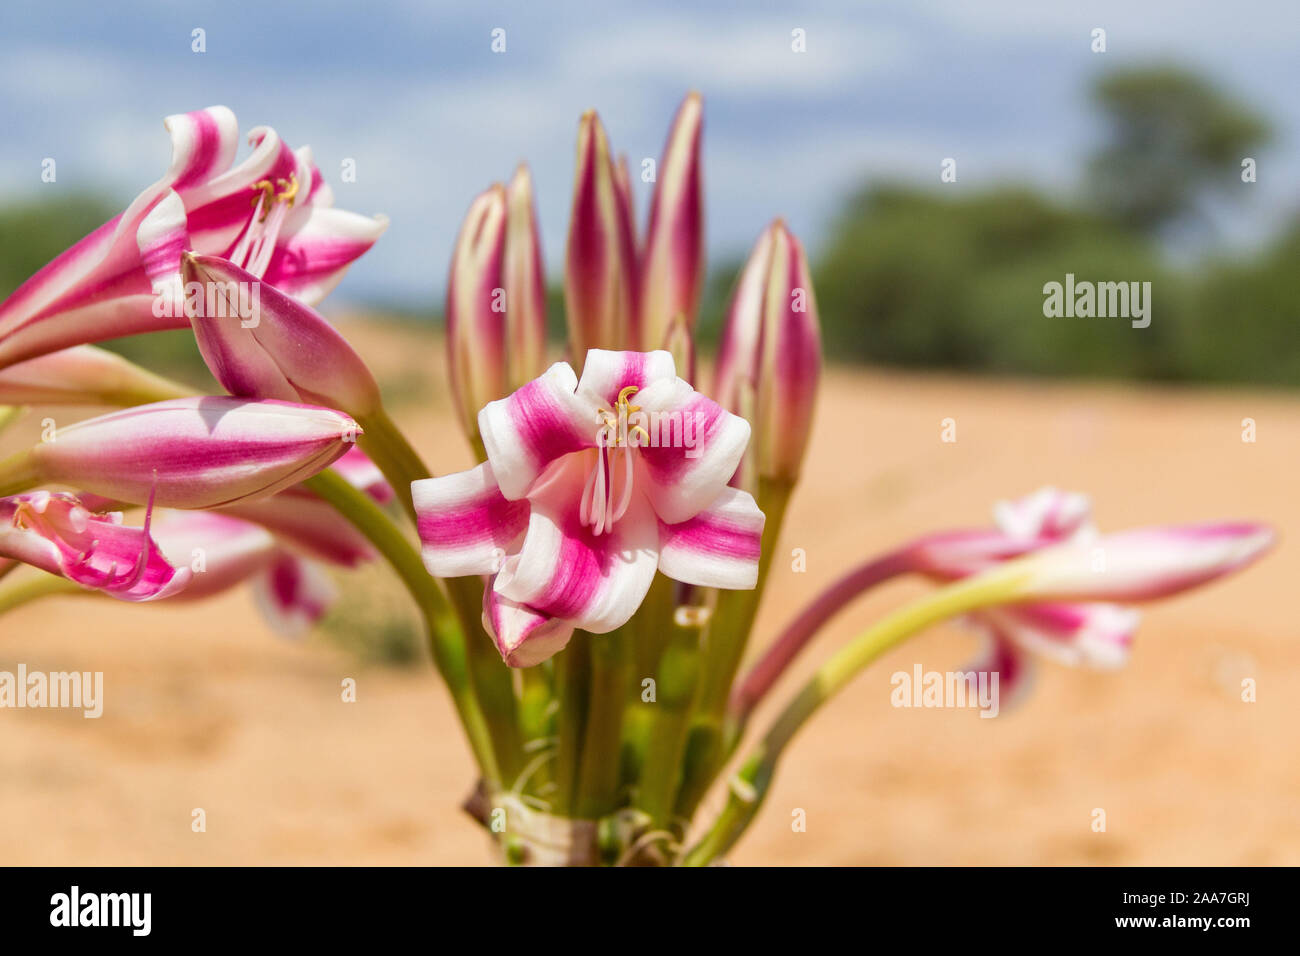 Gros plan d'une croissance sauvage fleur rose et blanc (Crinum macowanii ?), près de Waterberg, Namibie Banque D'Images